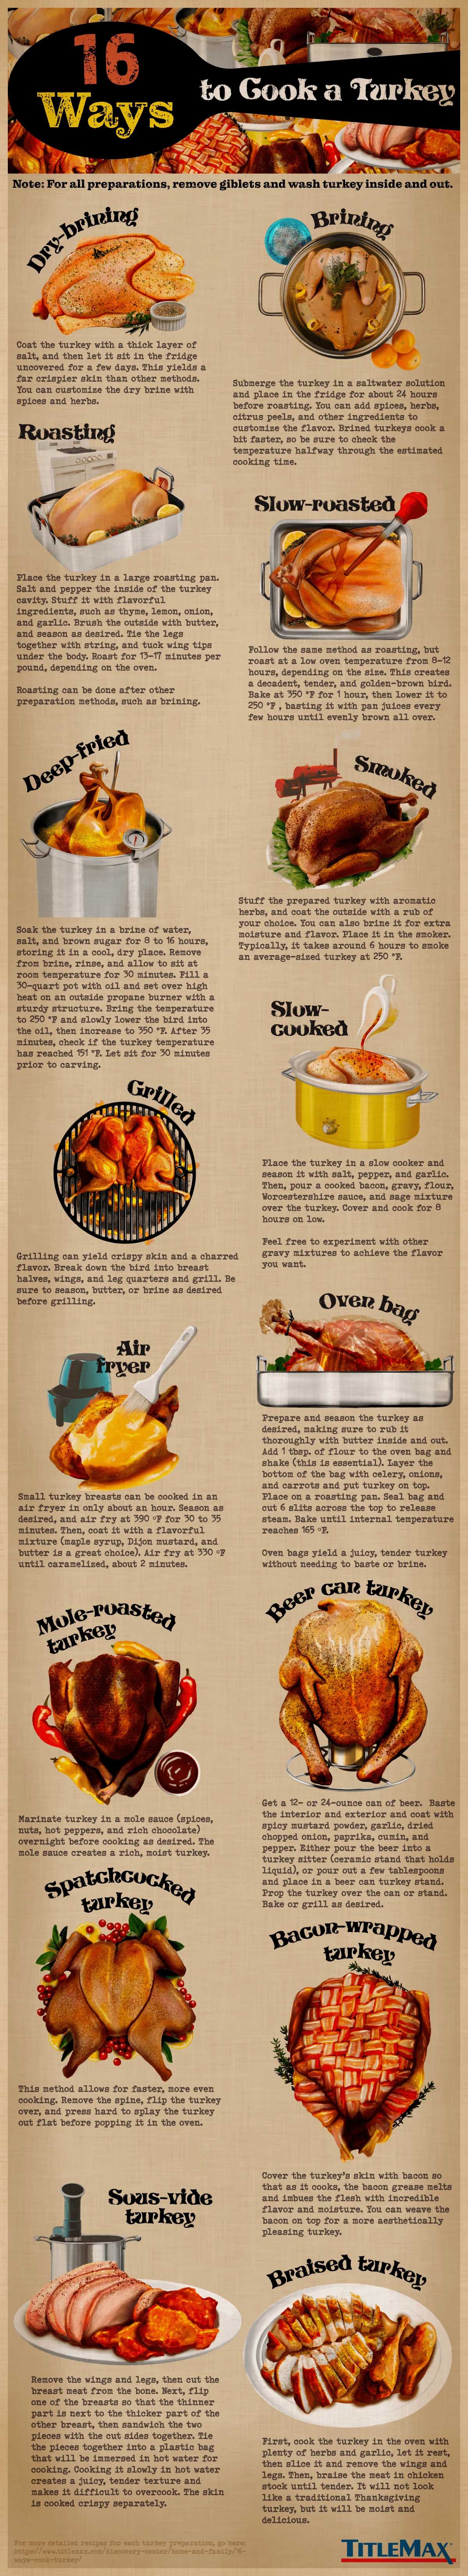 16 Ways to Cook a Turkey